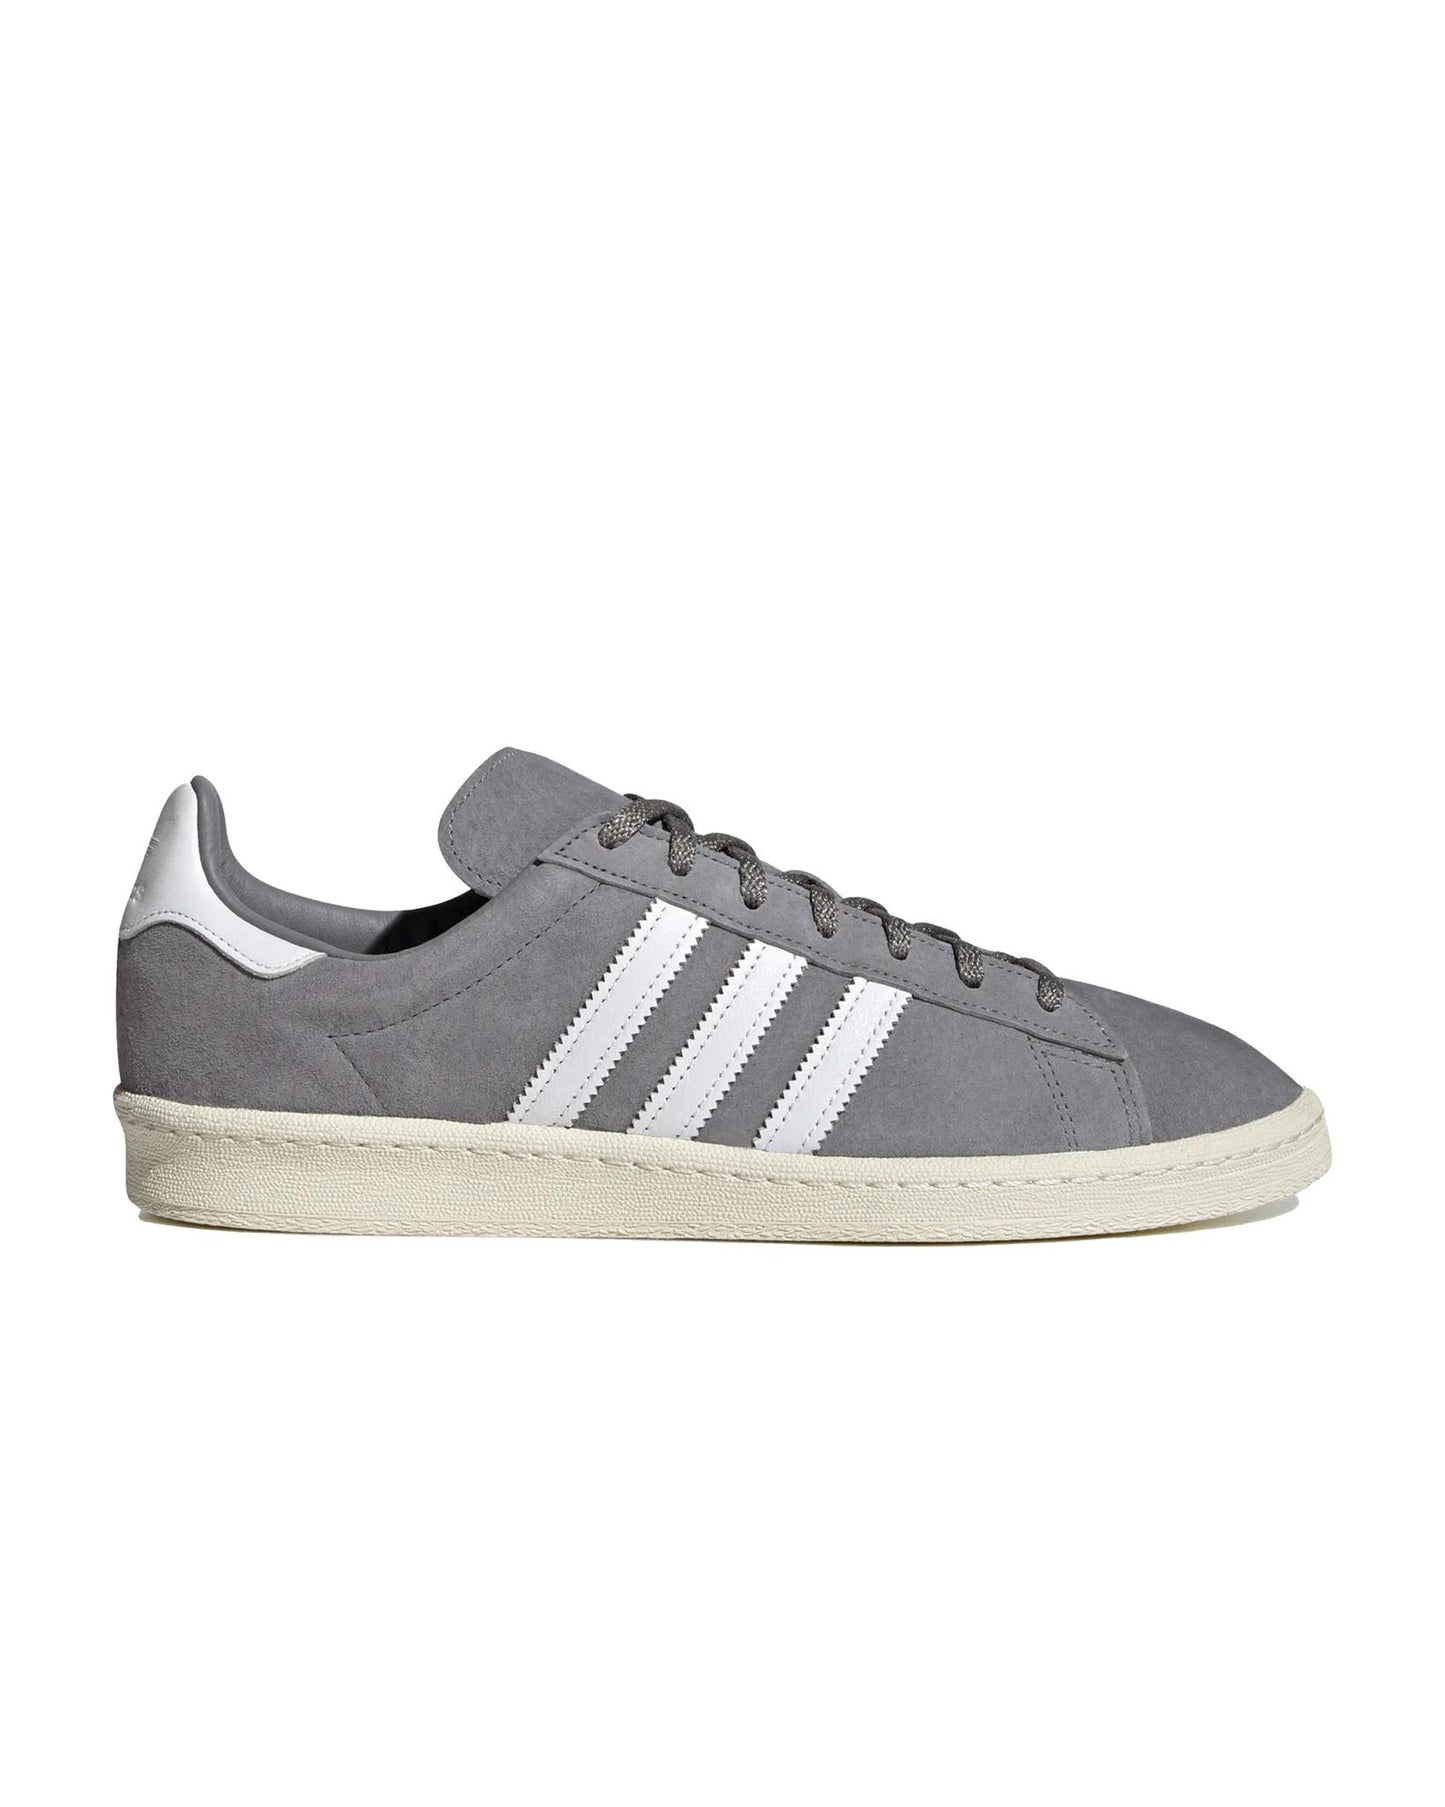 
                    
                      Adidas Campus 80s Shoes Grey
                    
                  